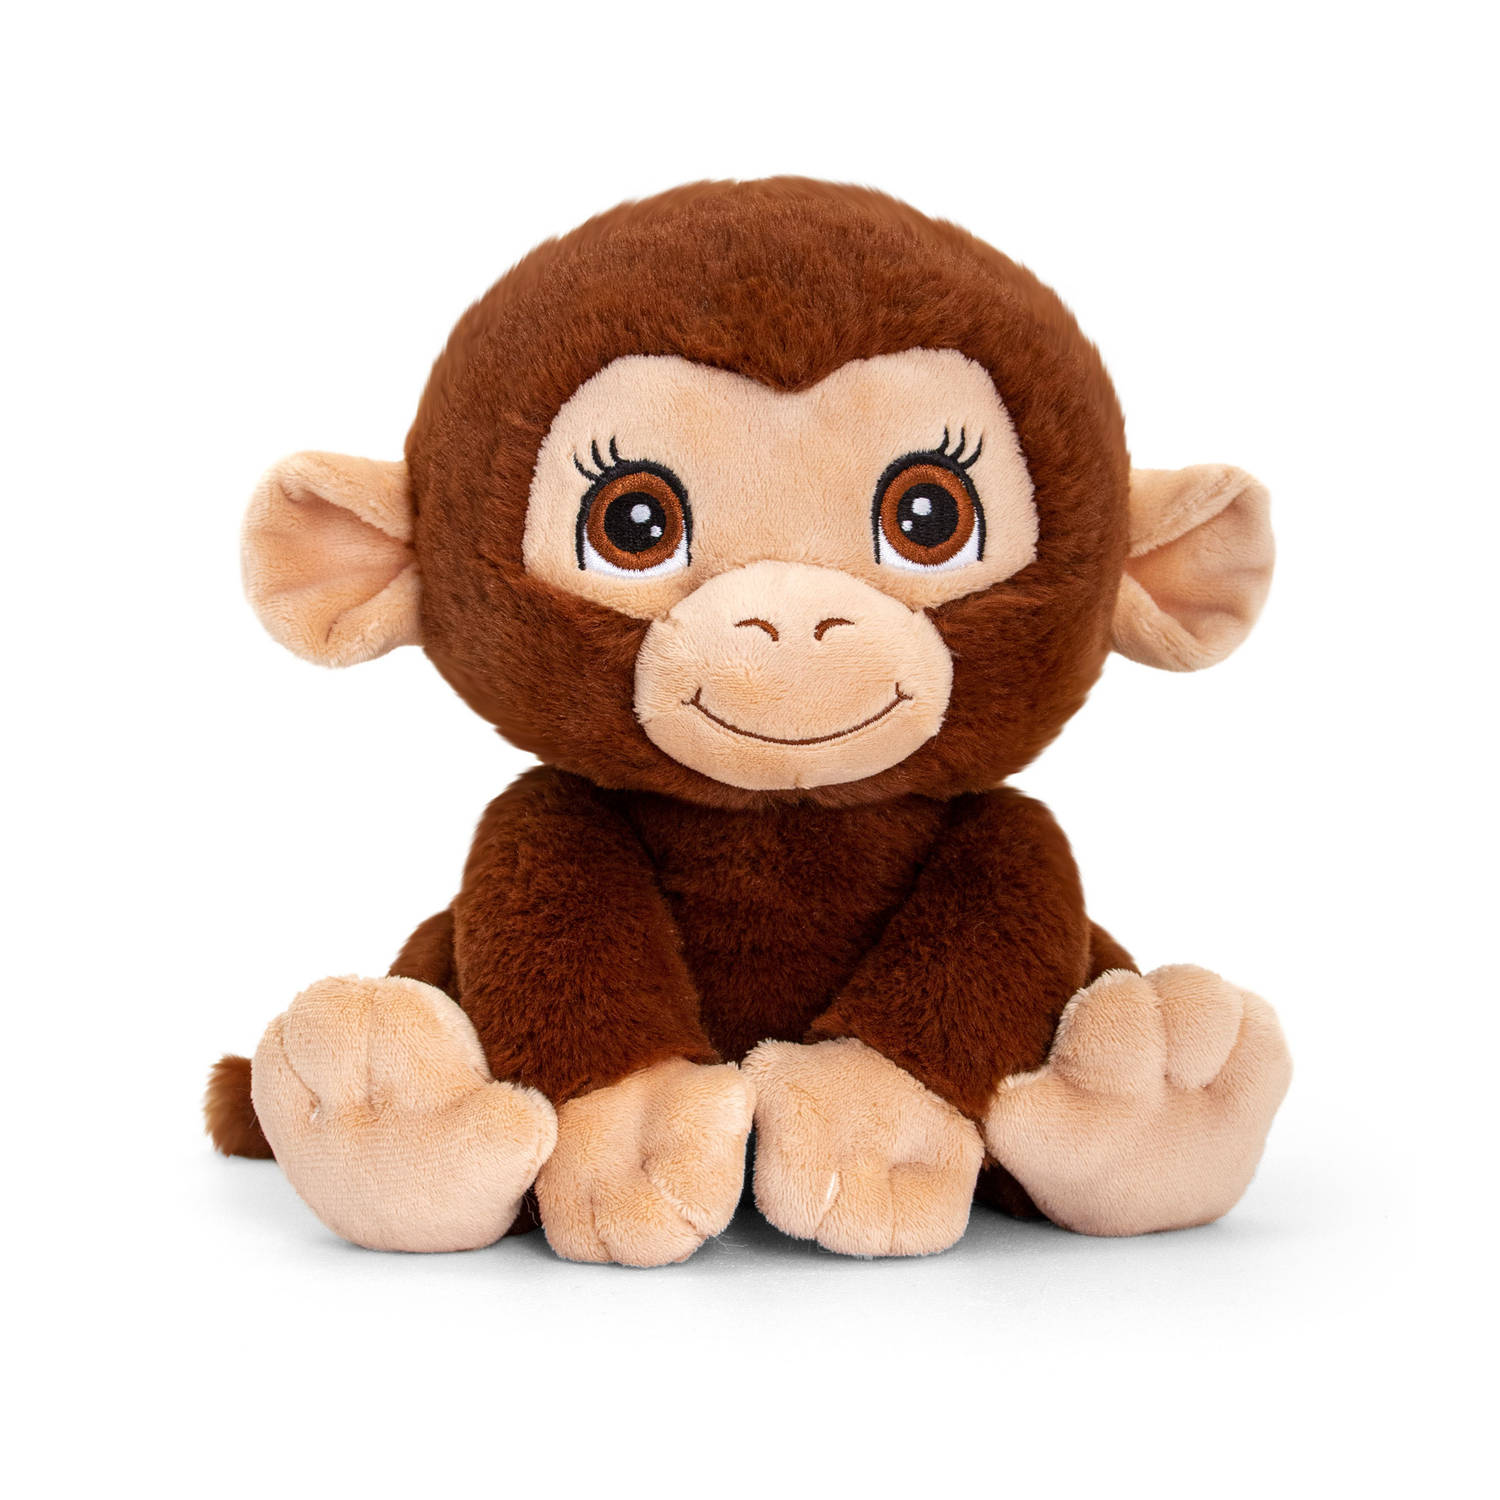 Pluche knuffel dieren chimpansee aap 25 cm - Knuffelbeesten apen speelgoed